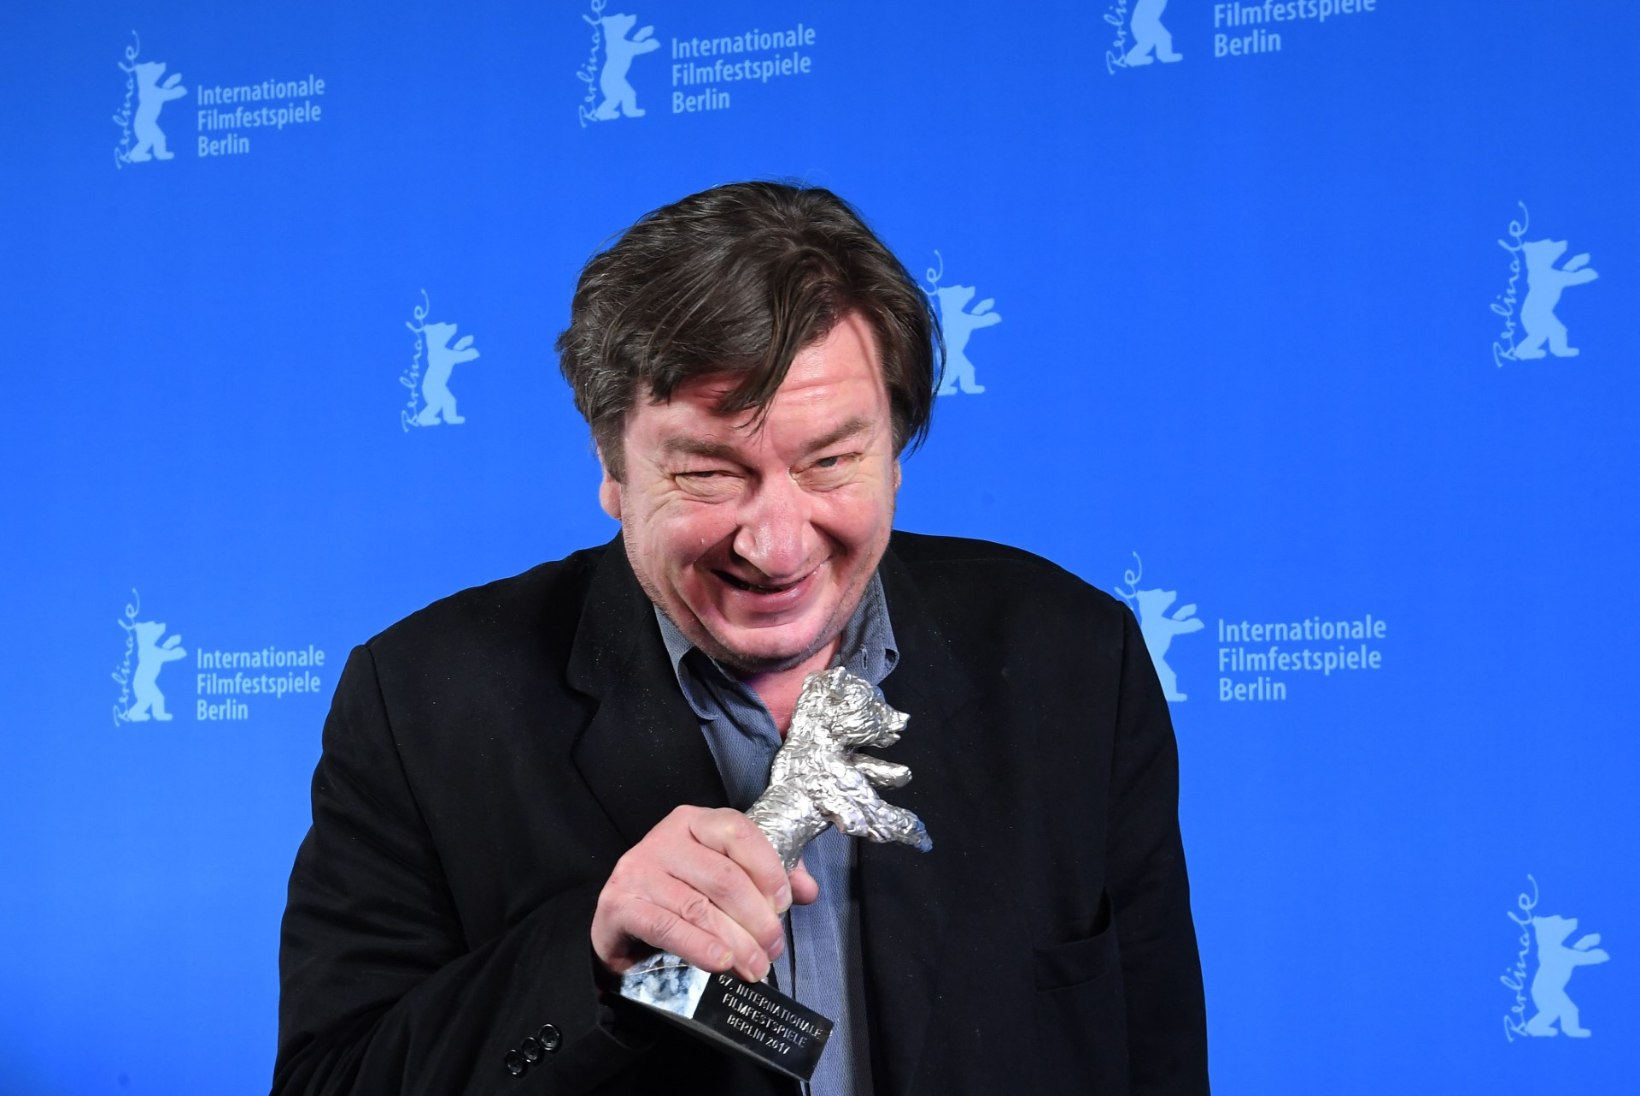 Berliini filmifestivalil valiti parimaks lavastajaks soomlane Aki Kaurismäki